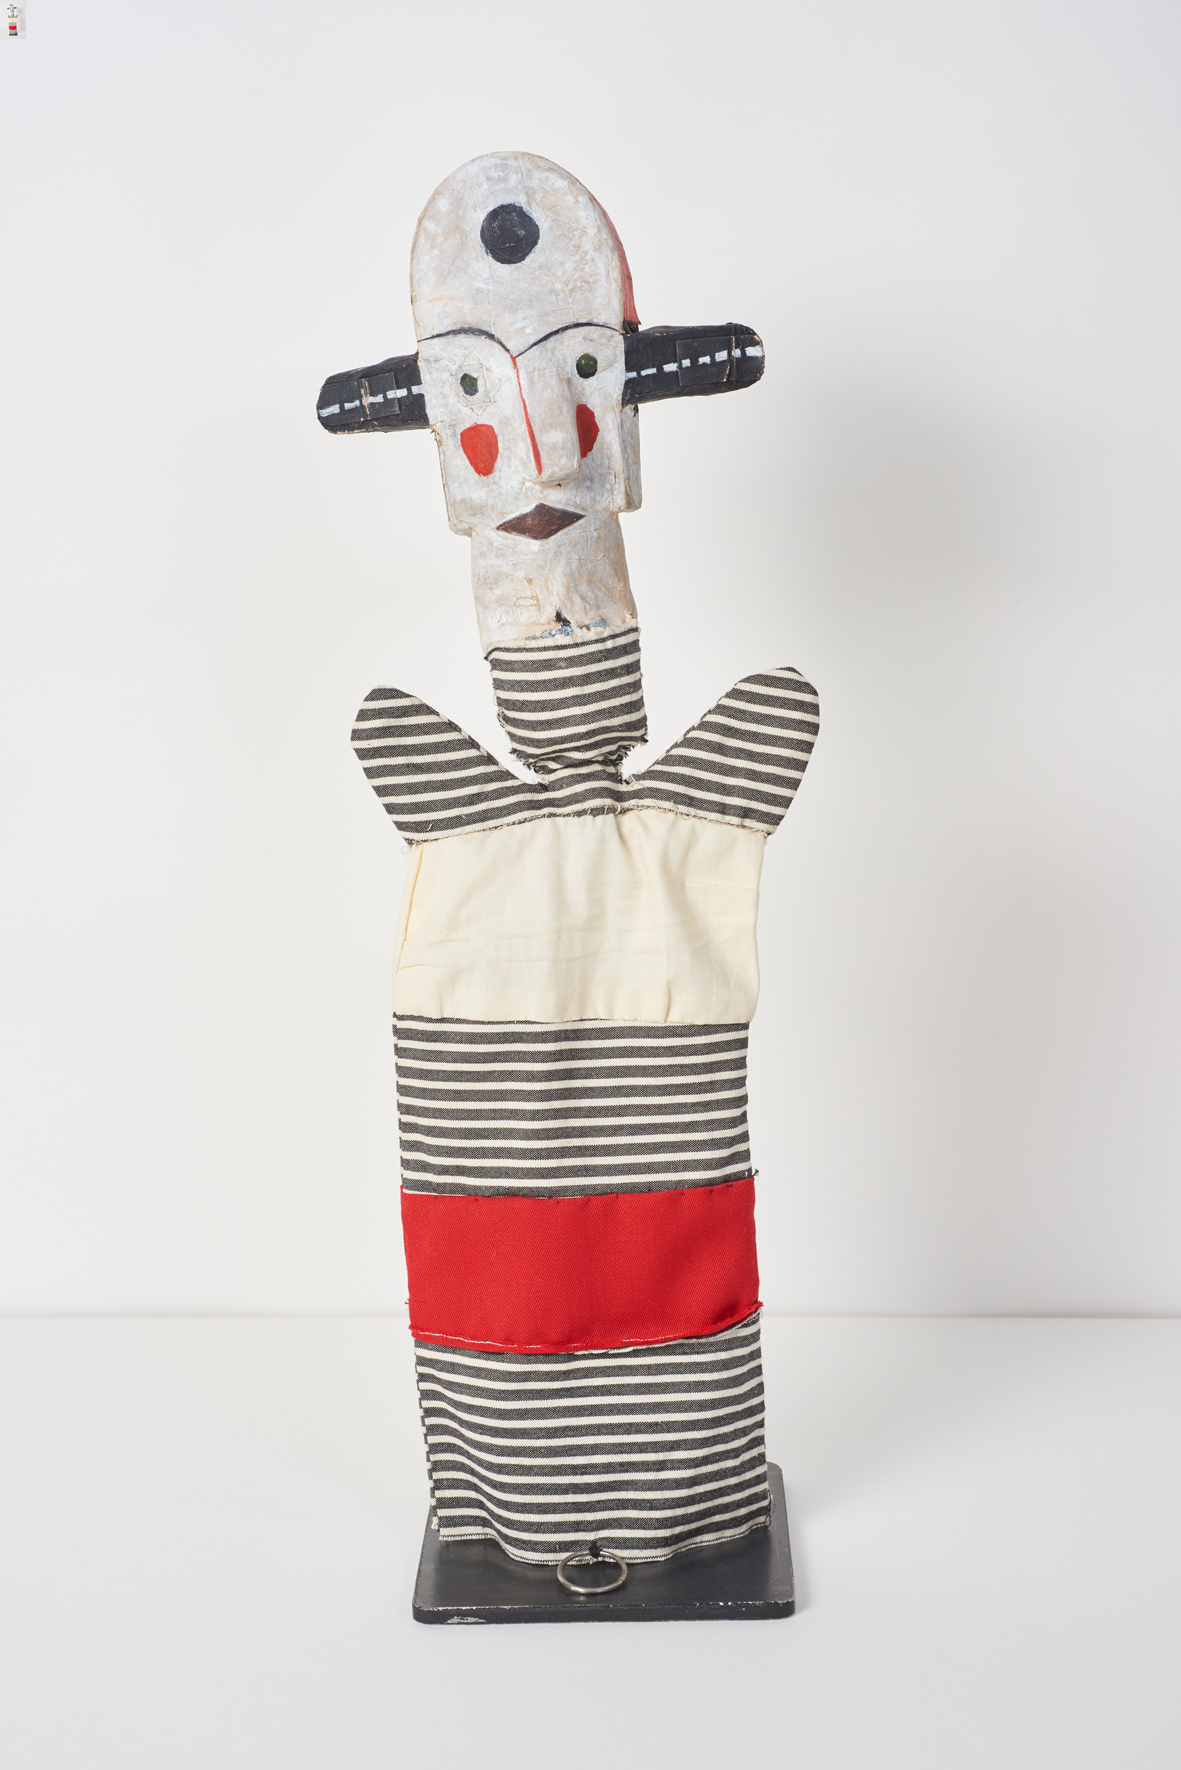 Paul Klee, Senza titolo (Breitohrclown) / Clown dalle orecchie larghe; 1925 burattino, replica 9705; Ceramica fusa, dipinta, lino; Altezza 48 cm Collezione privata, Svizzera in deposito permanente al Zentrum Paul Klee, Berna